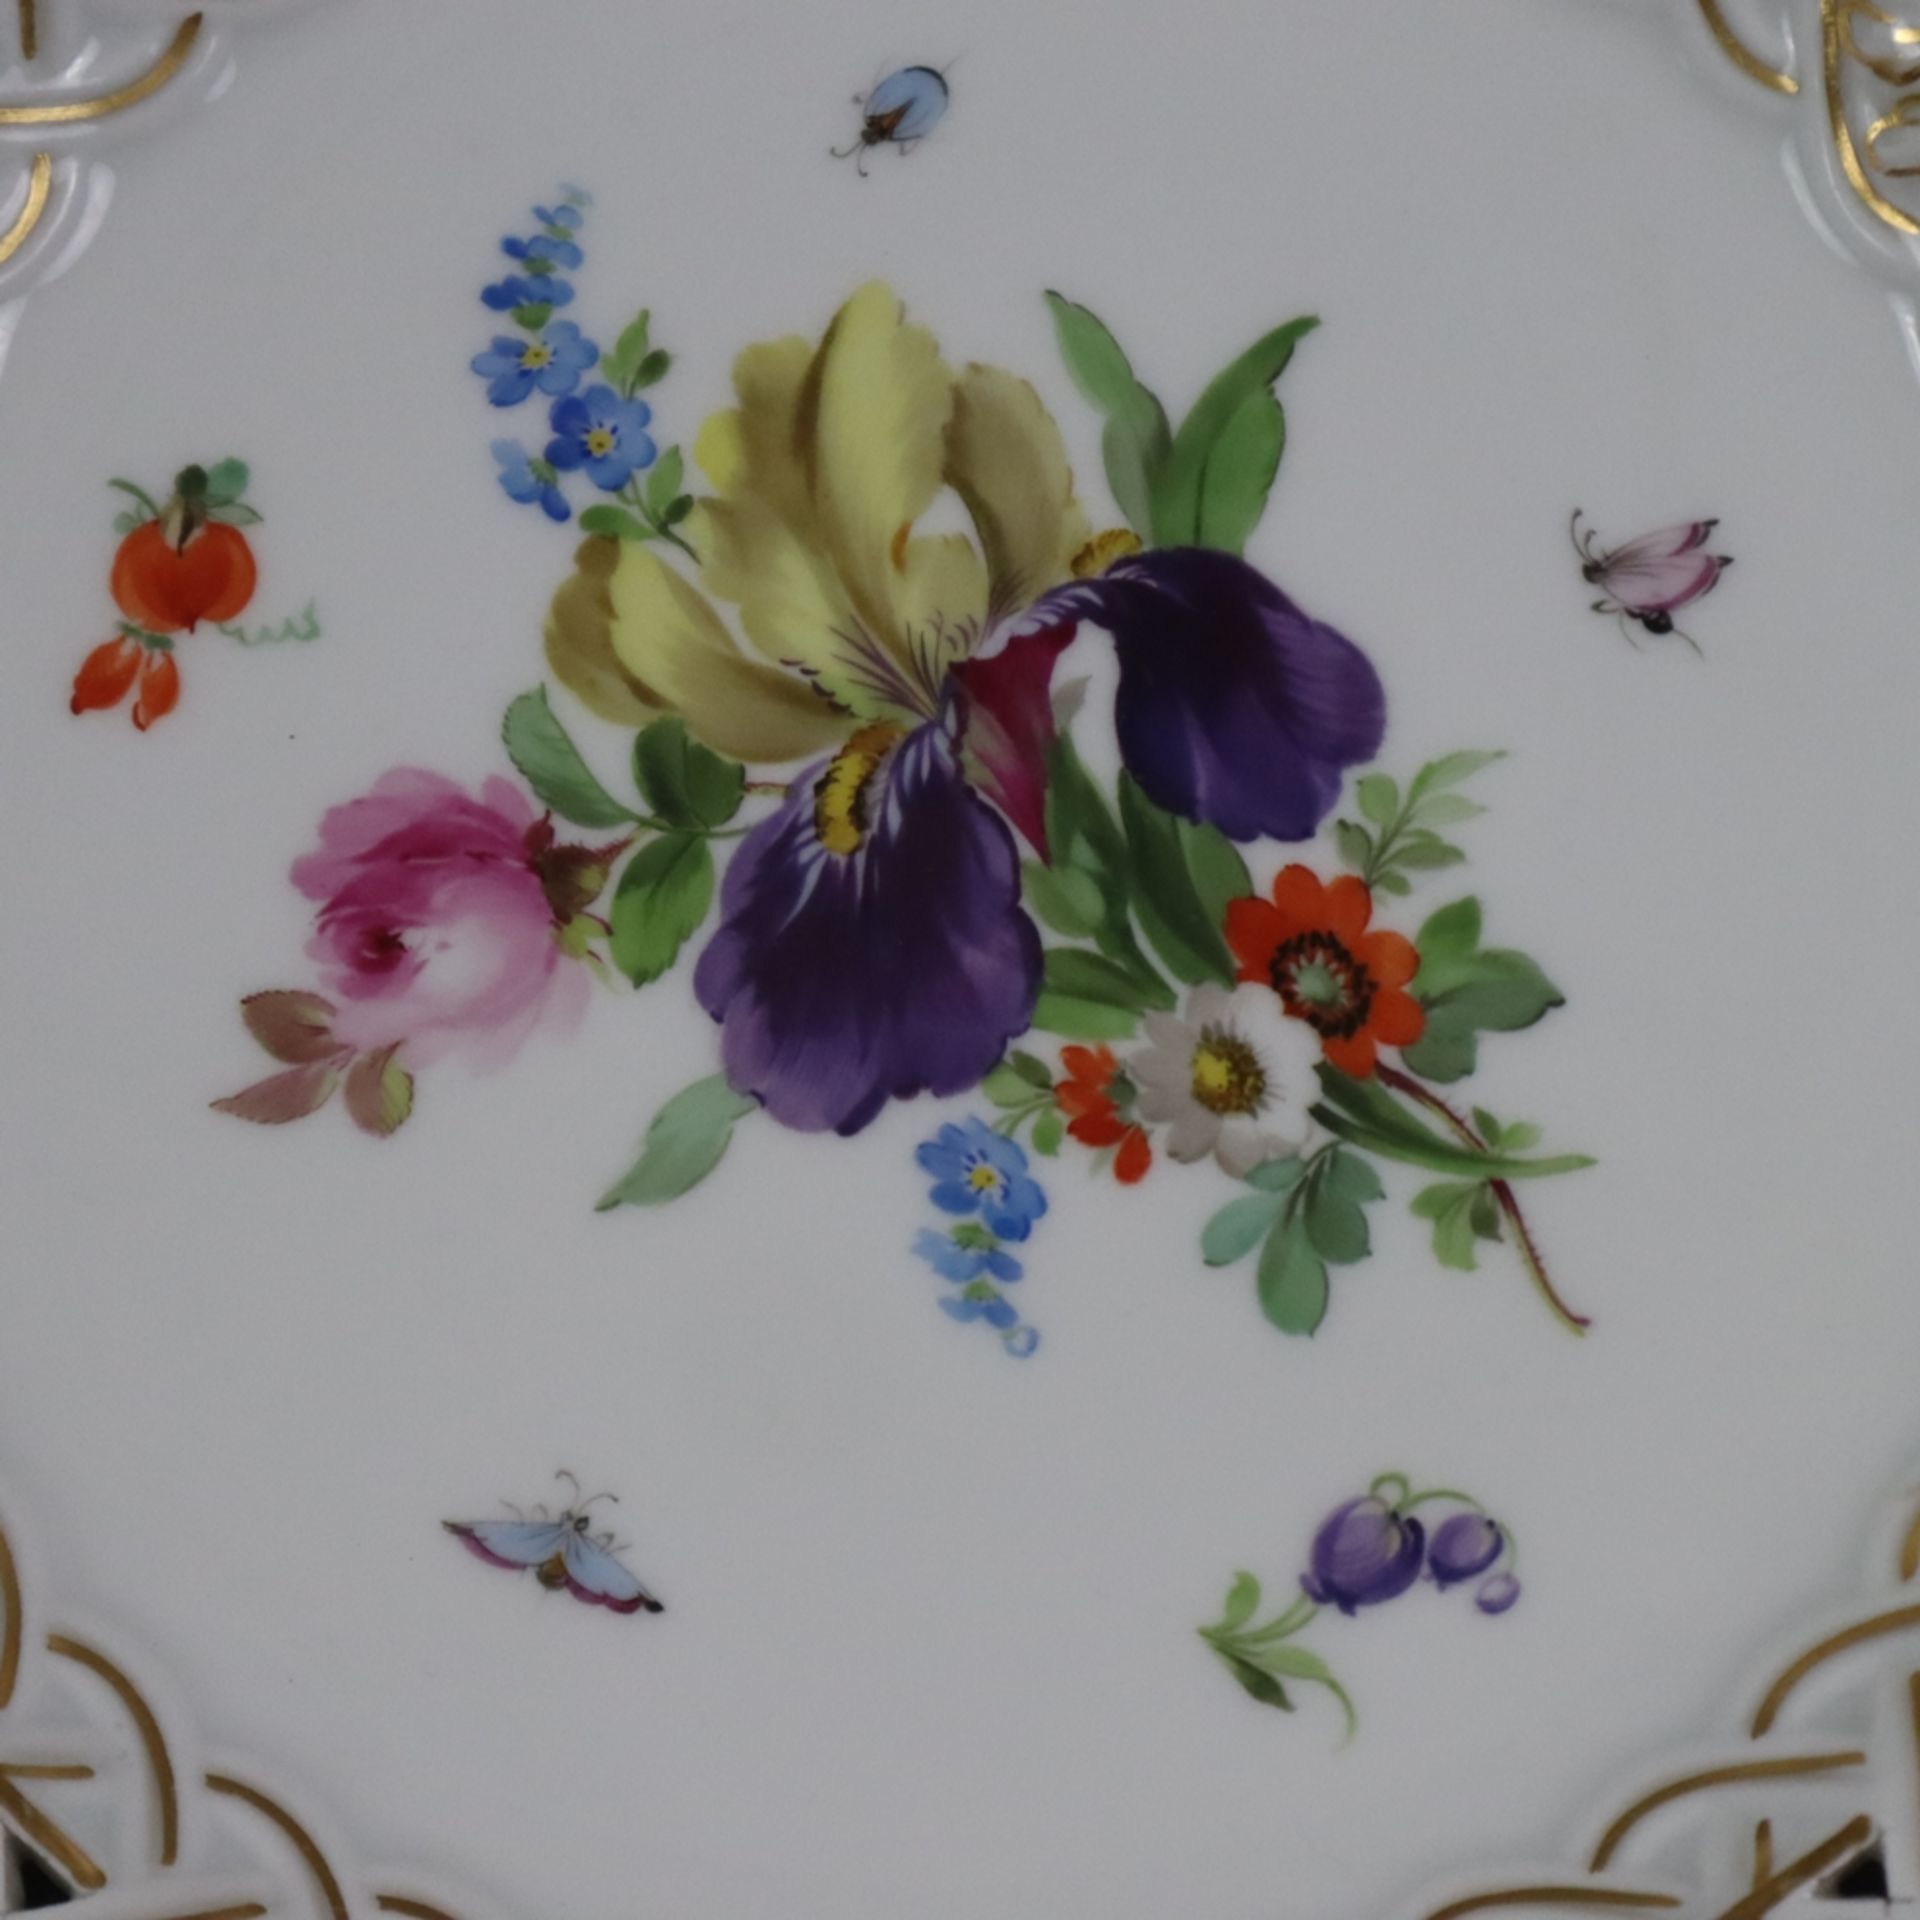 Durchbruchteller - Meissen, Knaufzeit, Porzellan, polychrome Blumenmalerei mit Insekten, Goldstaffa - Bild 2 aus 9